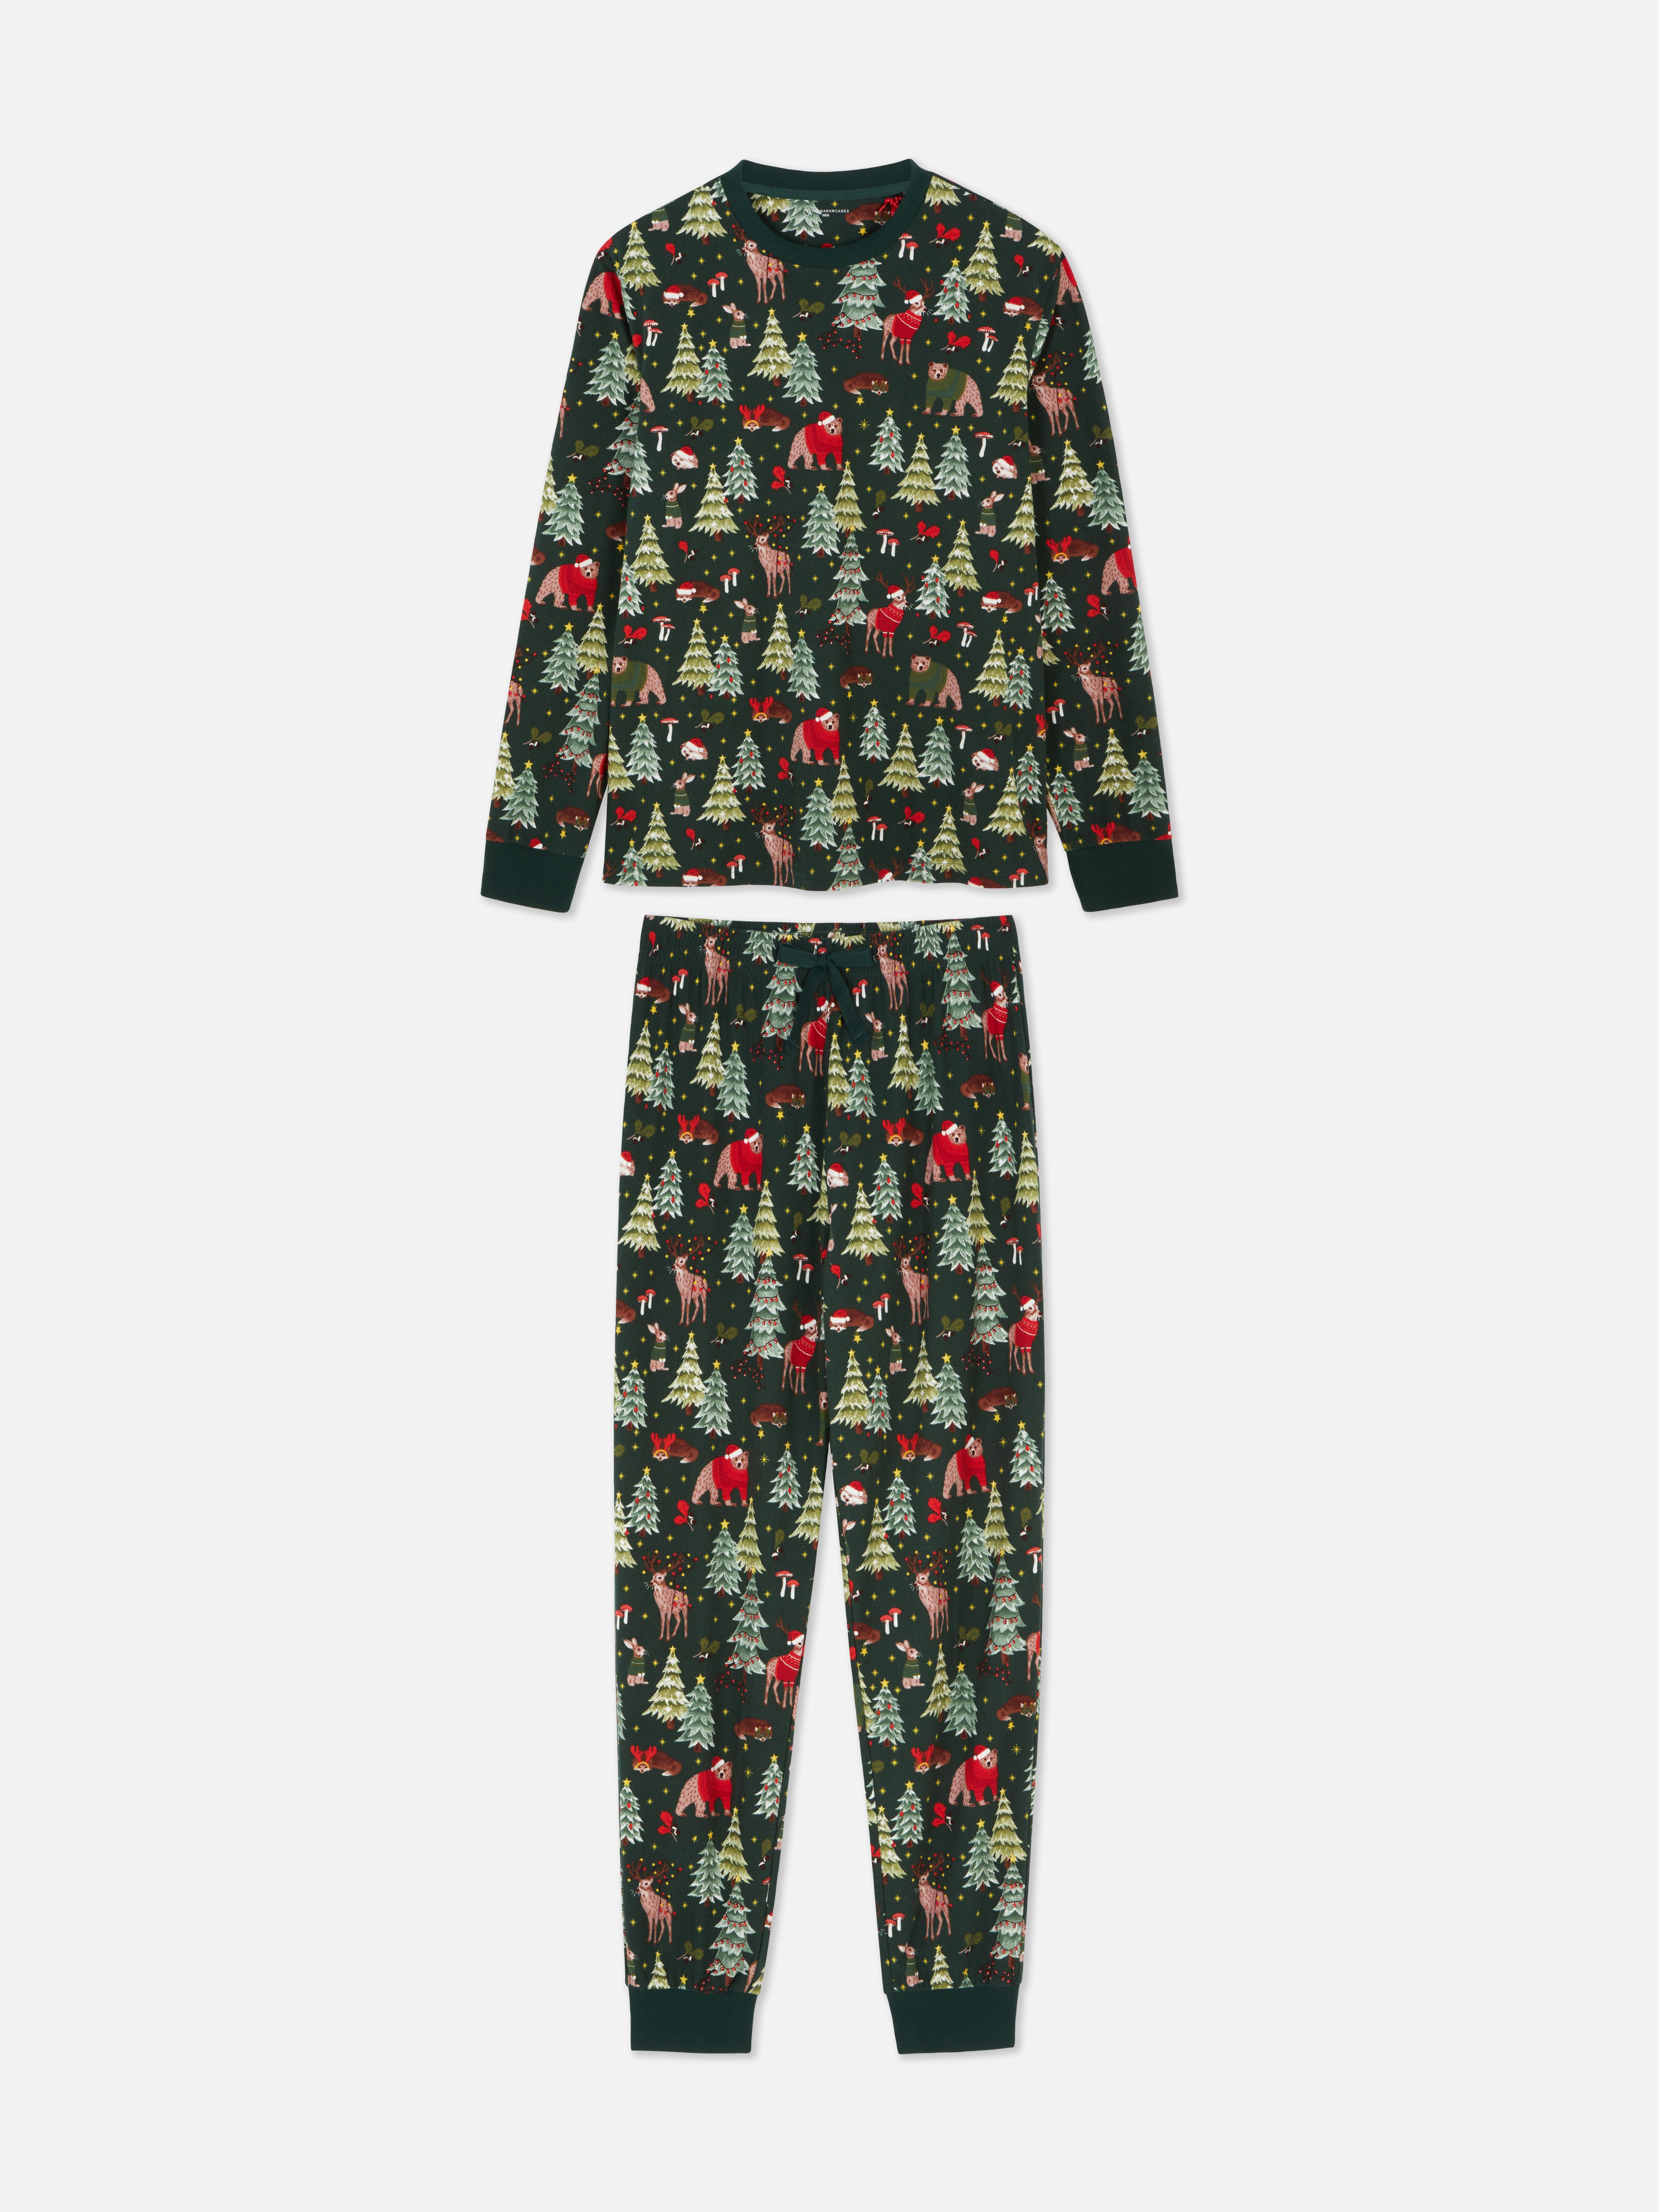 Men's Woodland Print Christmas Family Pajamas